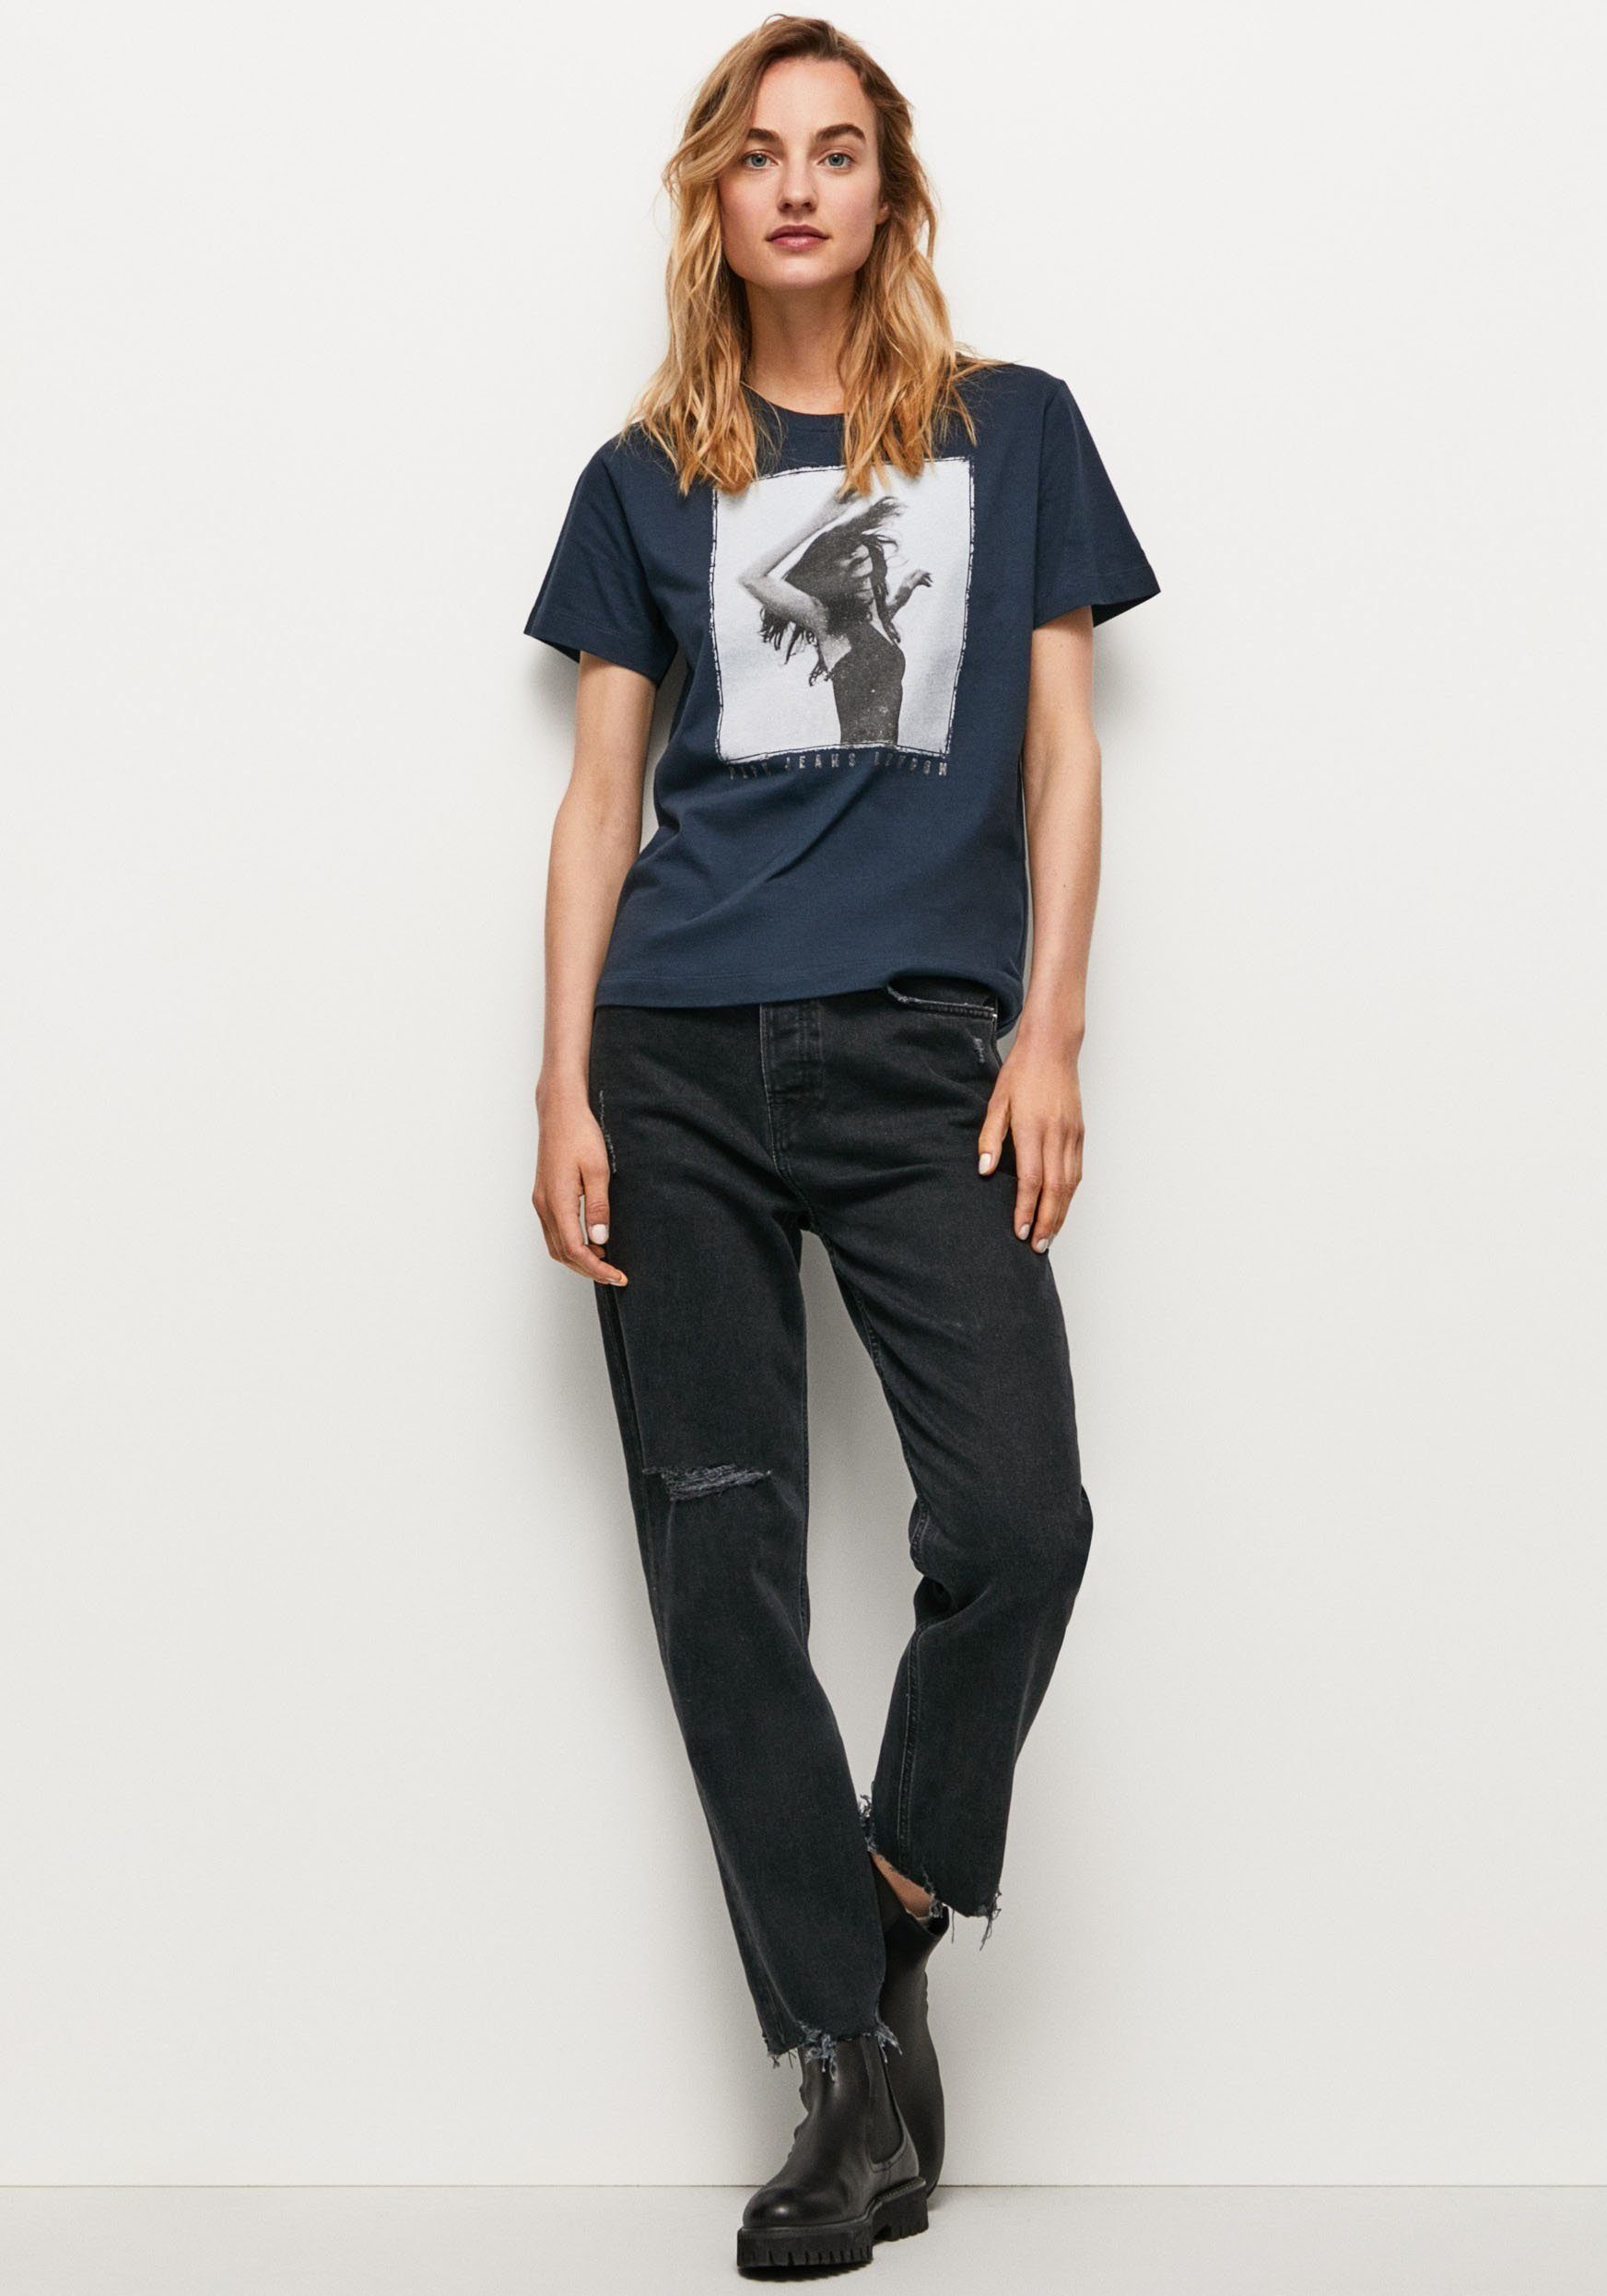 Jeans Passform 594DULWICH und figurbetonter markentypischem Frontprint mit T-Shirt SONYA in tollem Pepe